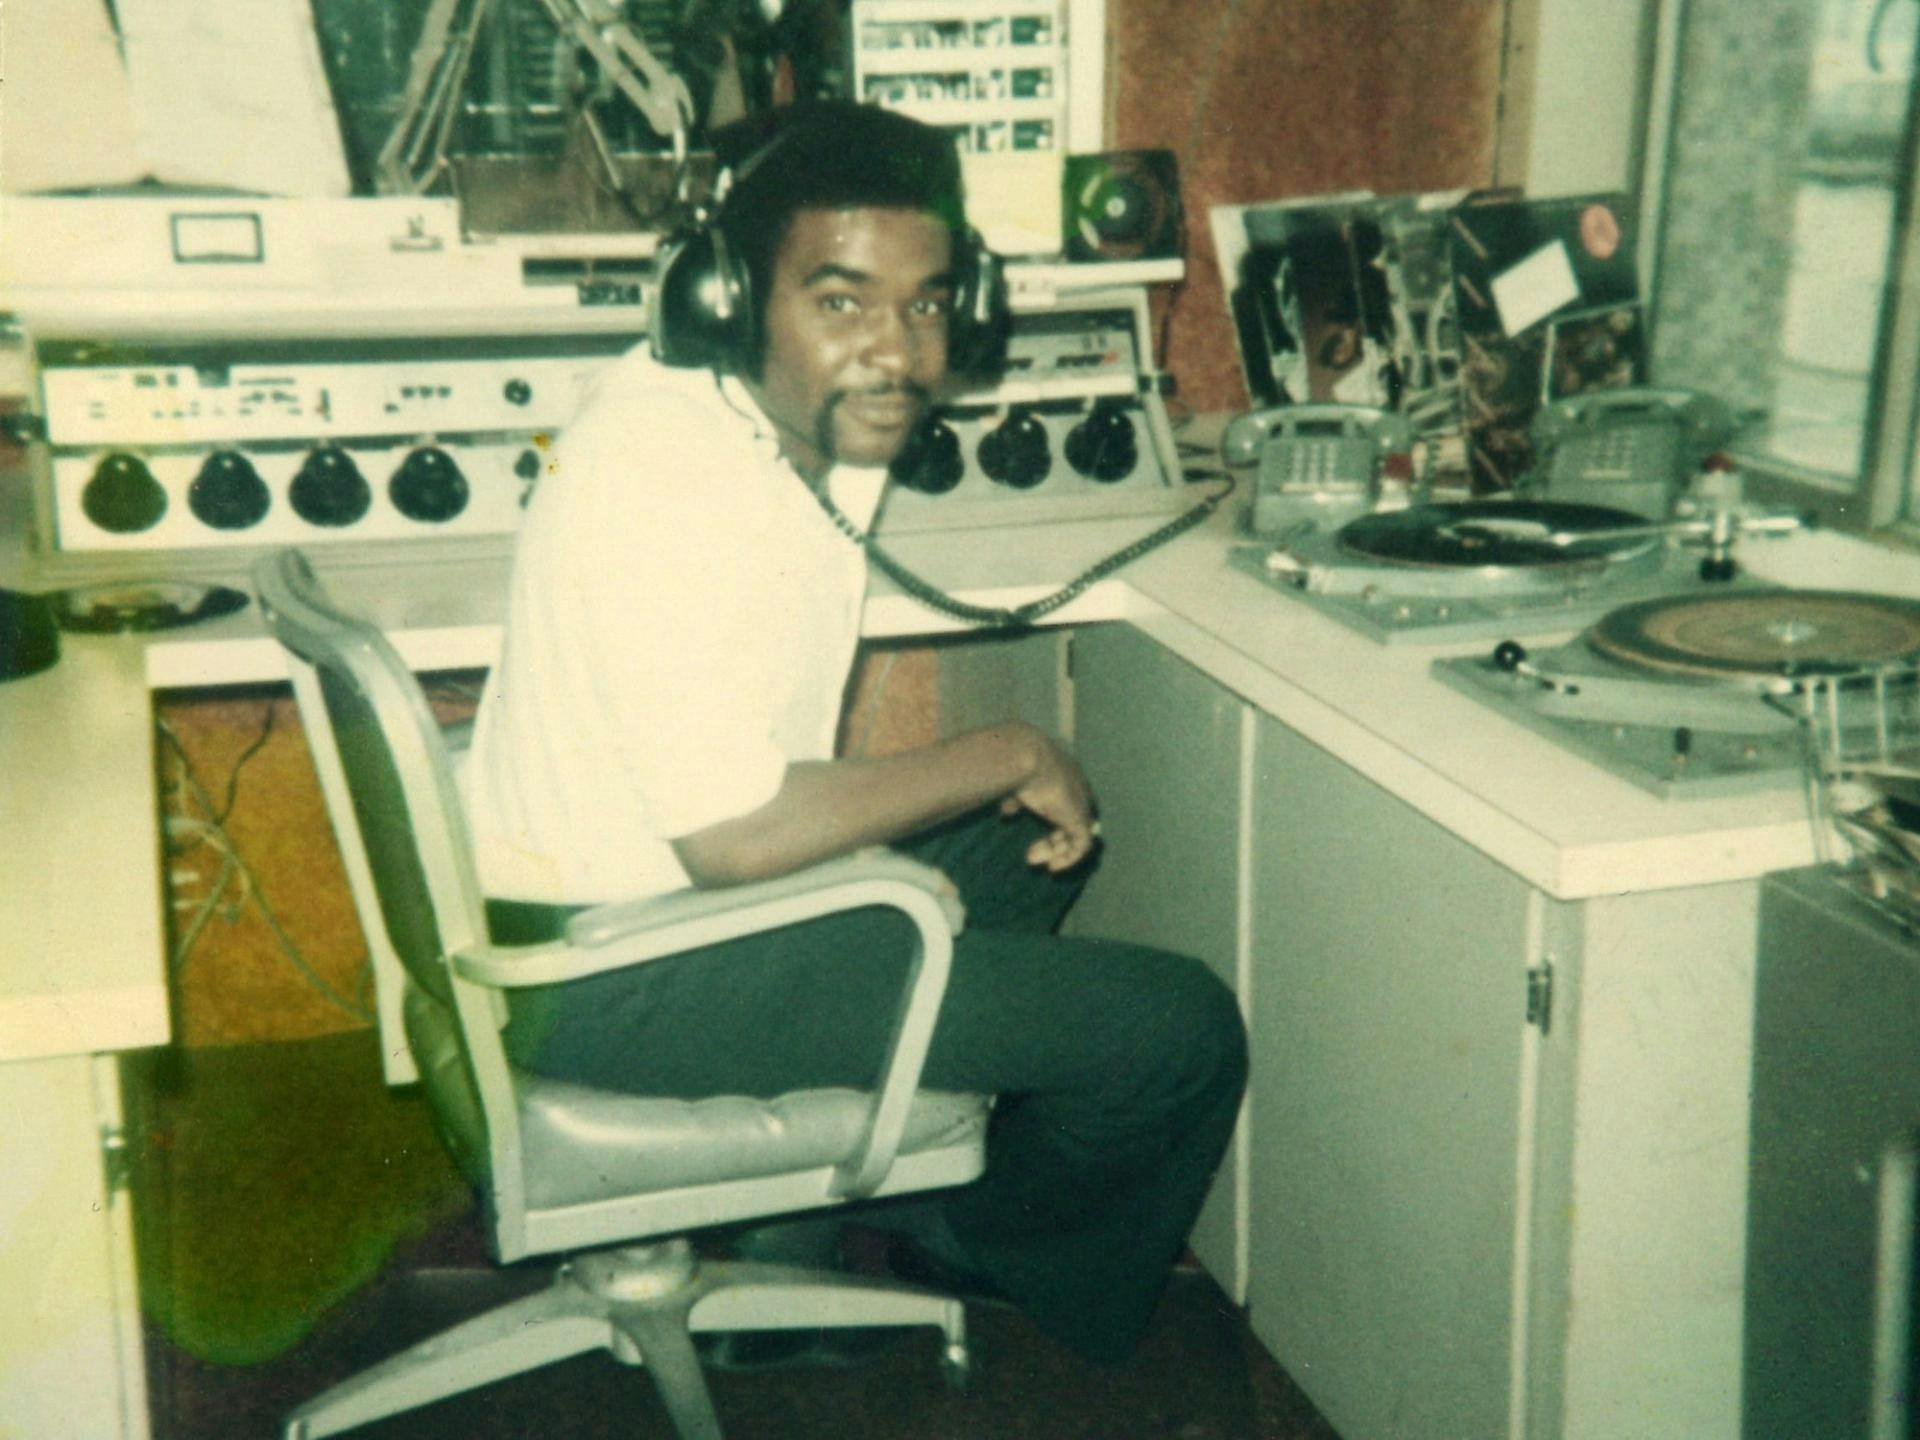 Robert L. Scott in a radio booth wearing headphones